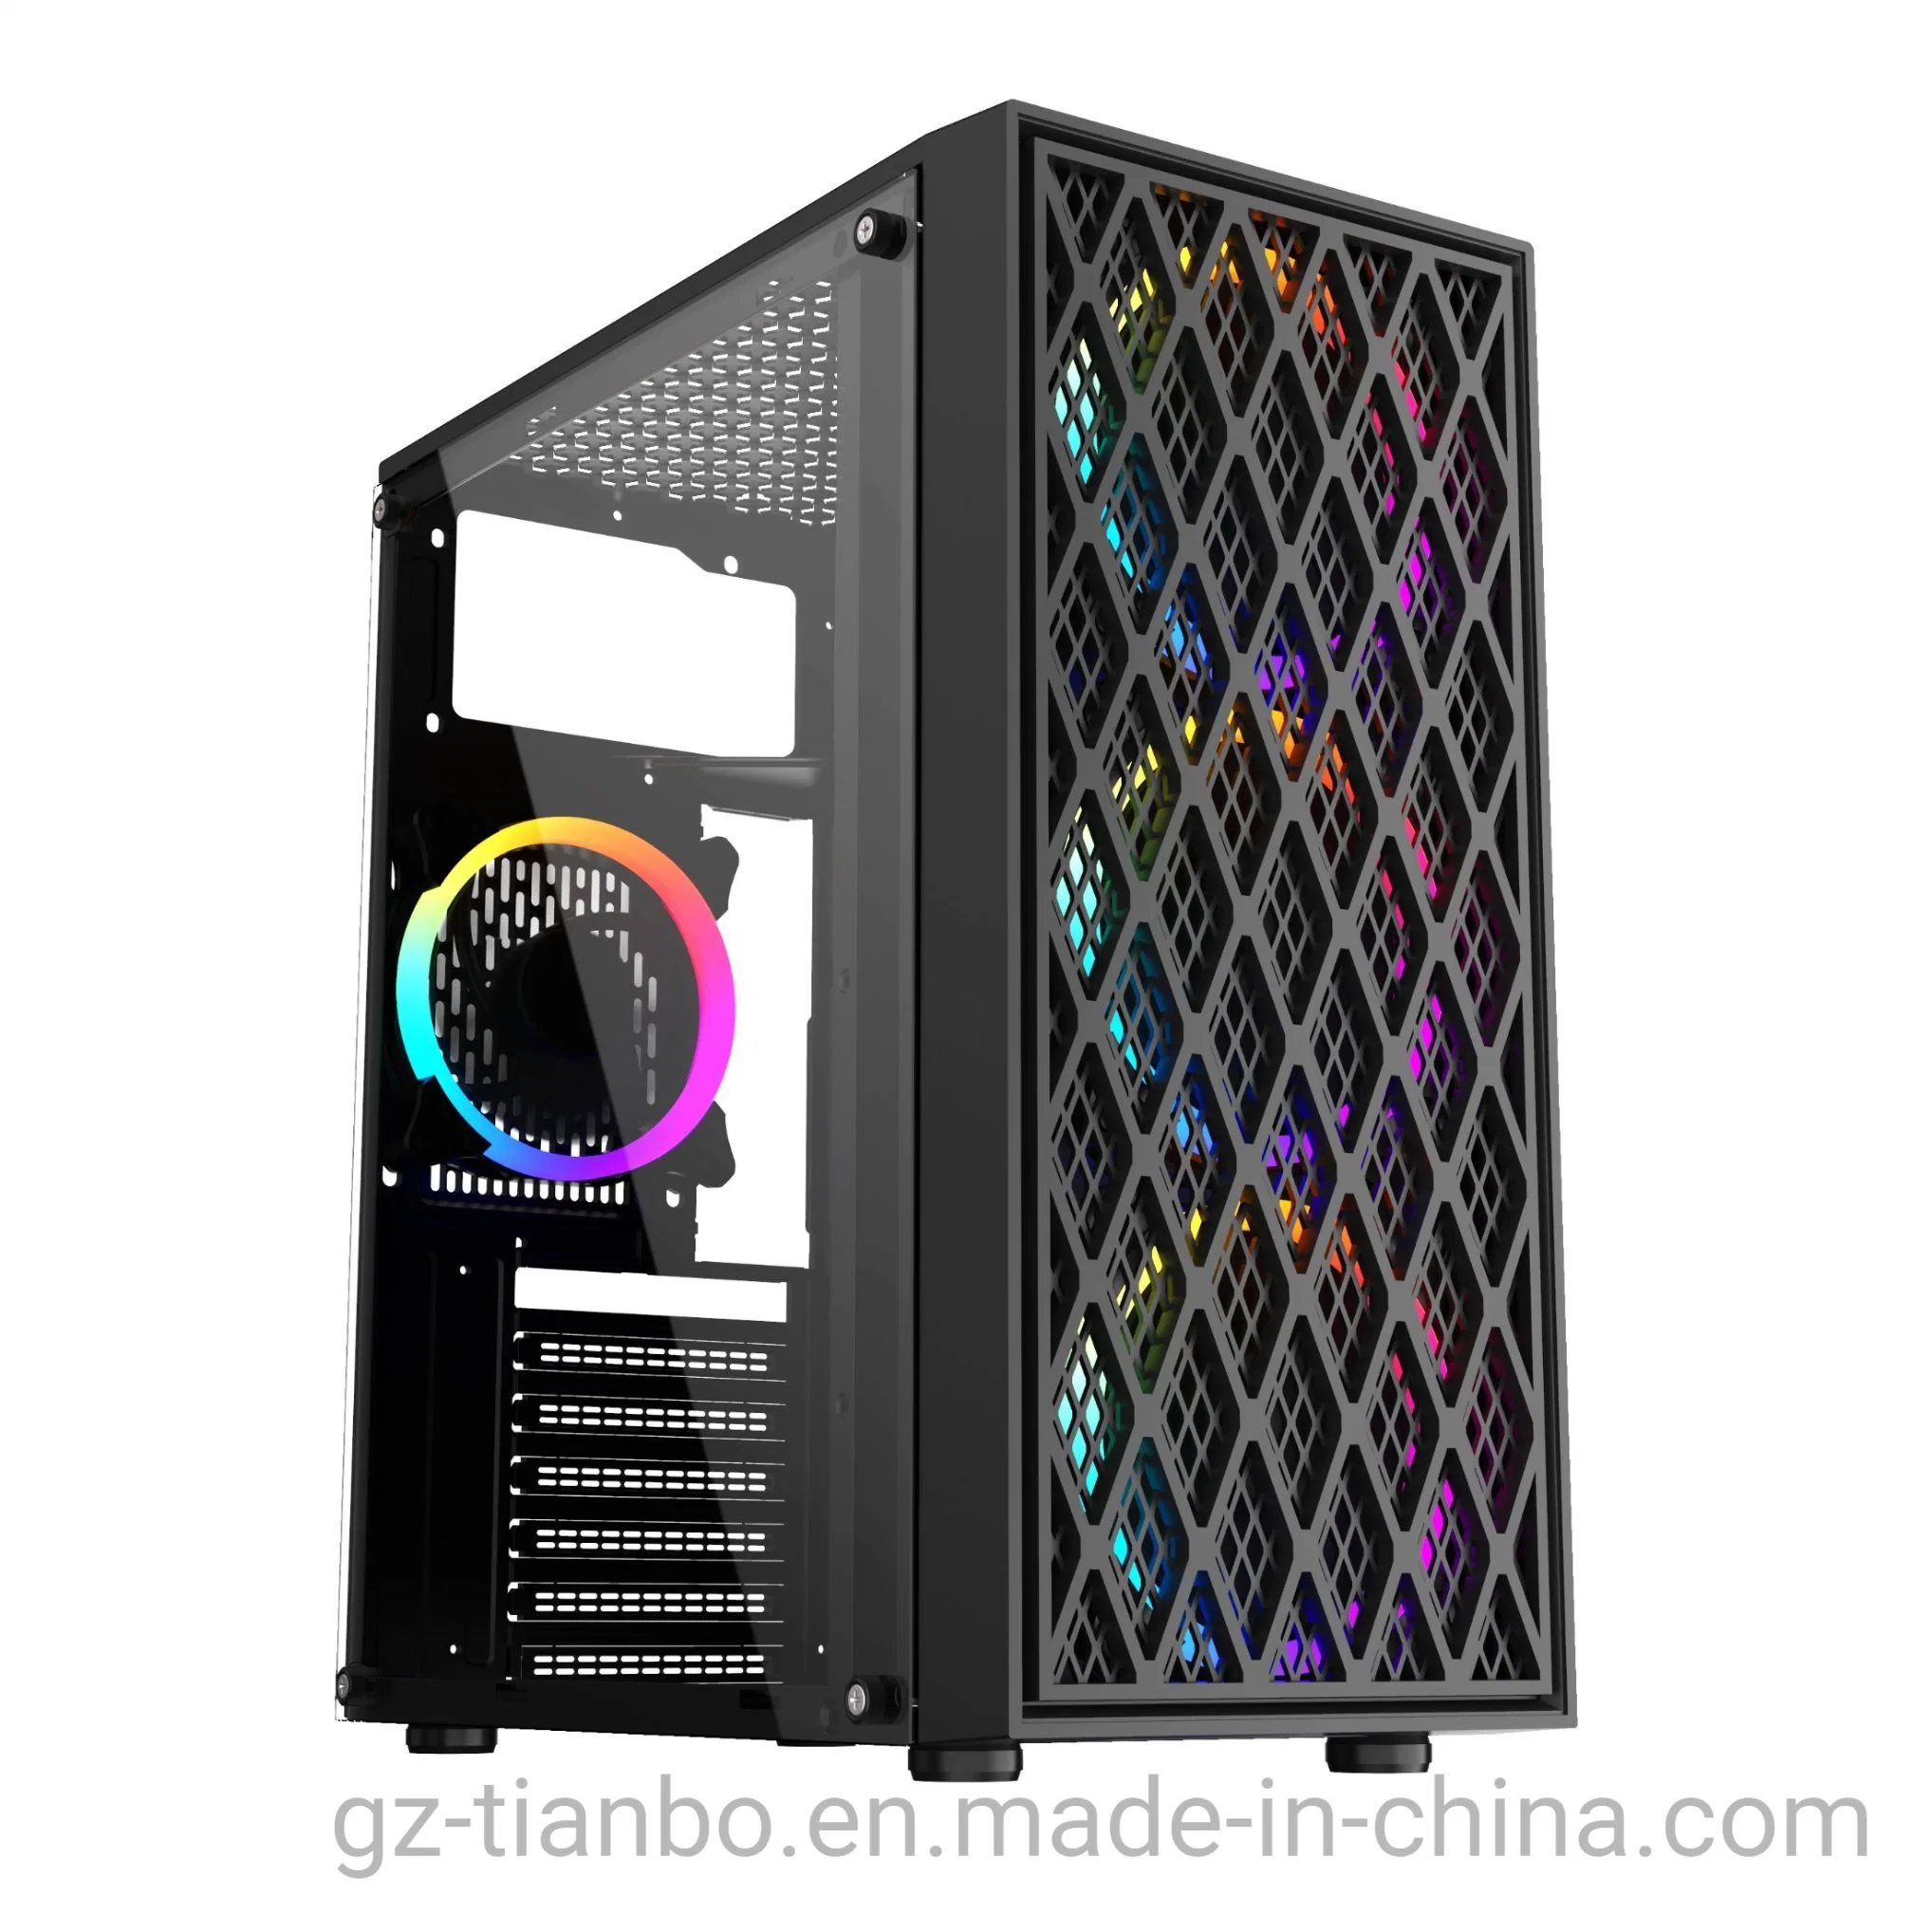 Los ventiladores de RGB caliente de Venta de Juegos Juegos de ordenador ATX el caso de piezas de ordenador PC con un gran diseño G43